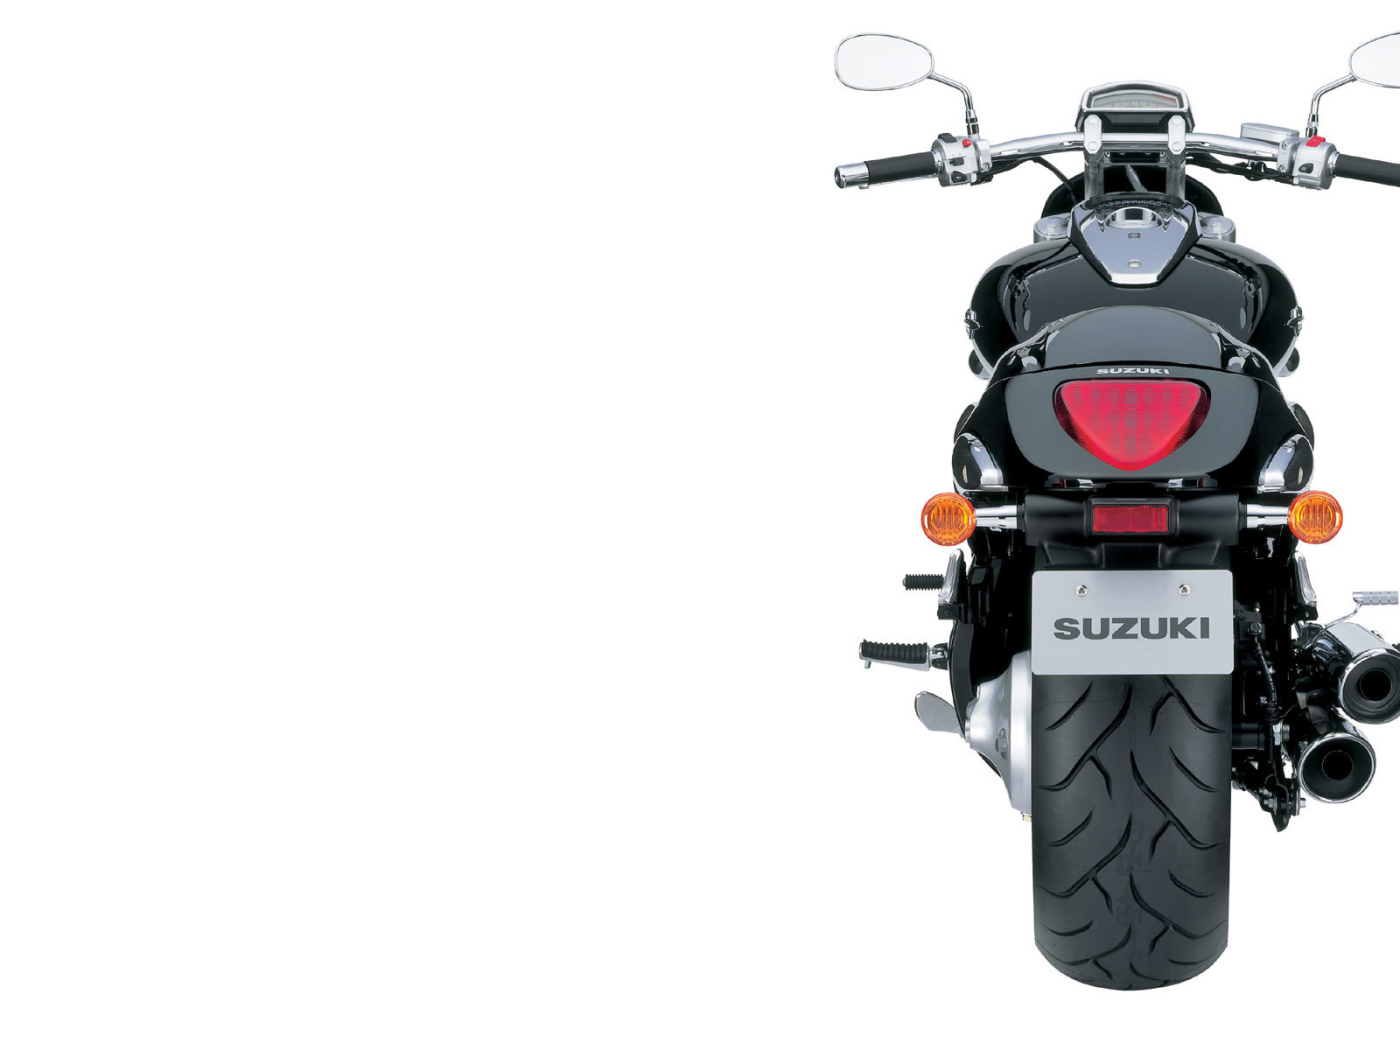 Test drive a motorcycle Suzuki Intruder M1800 R 